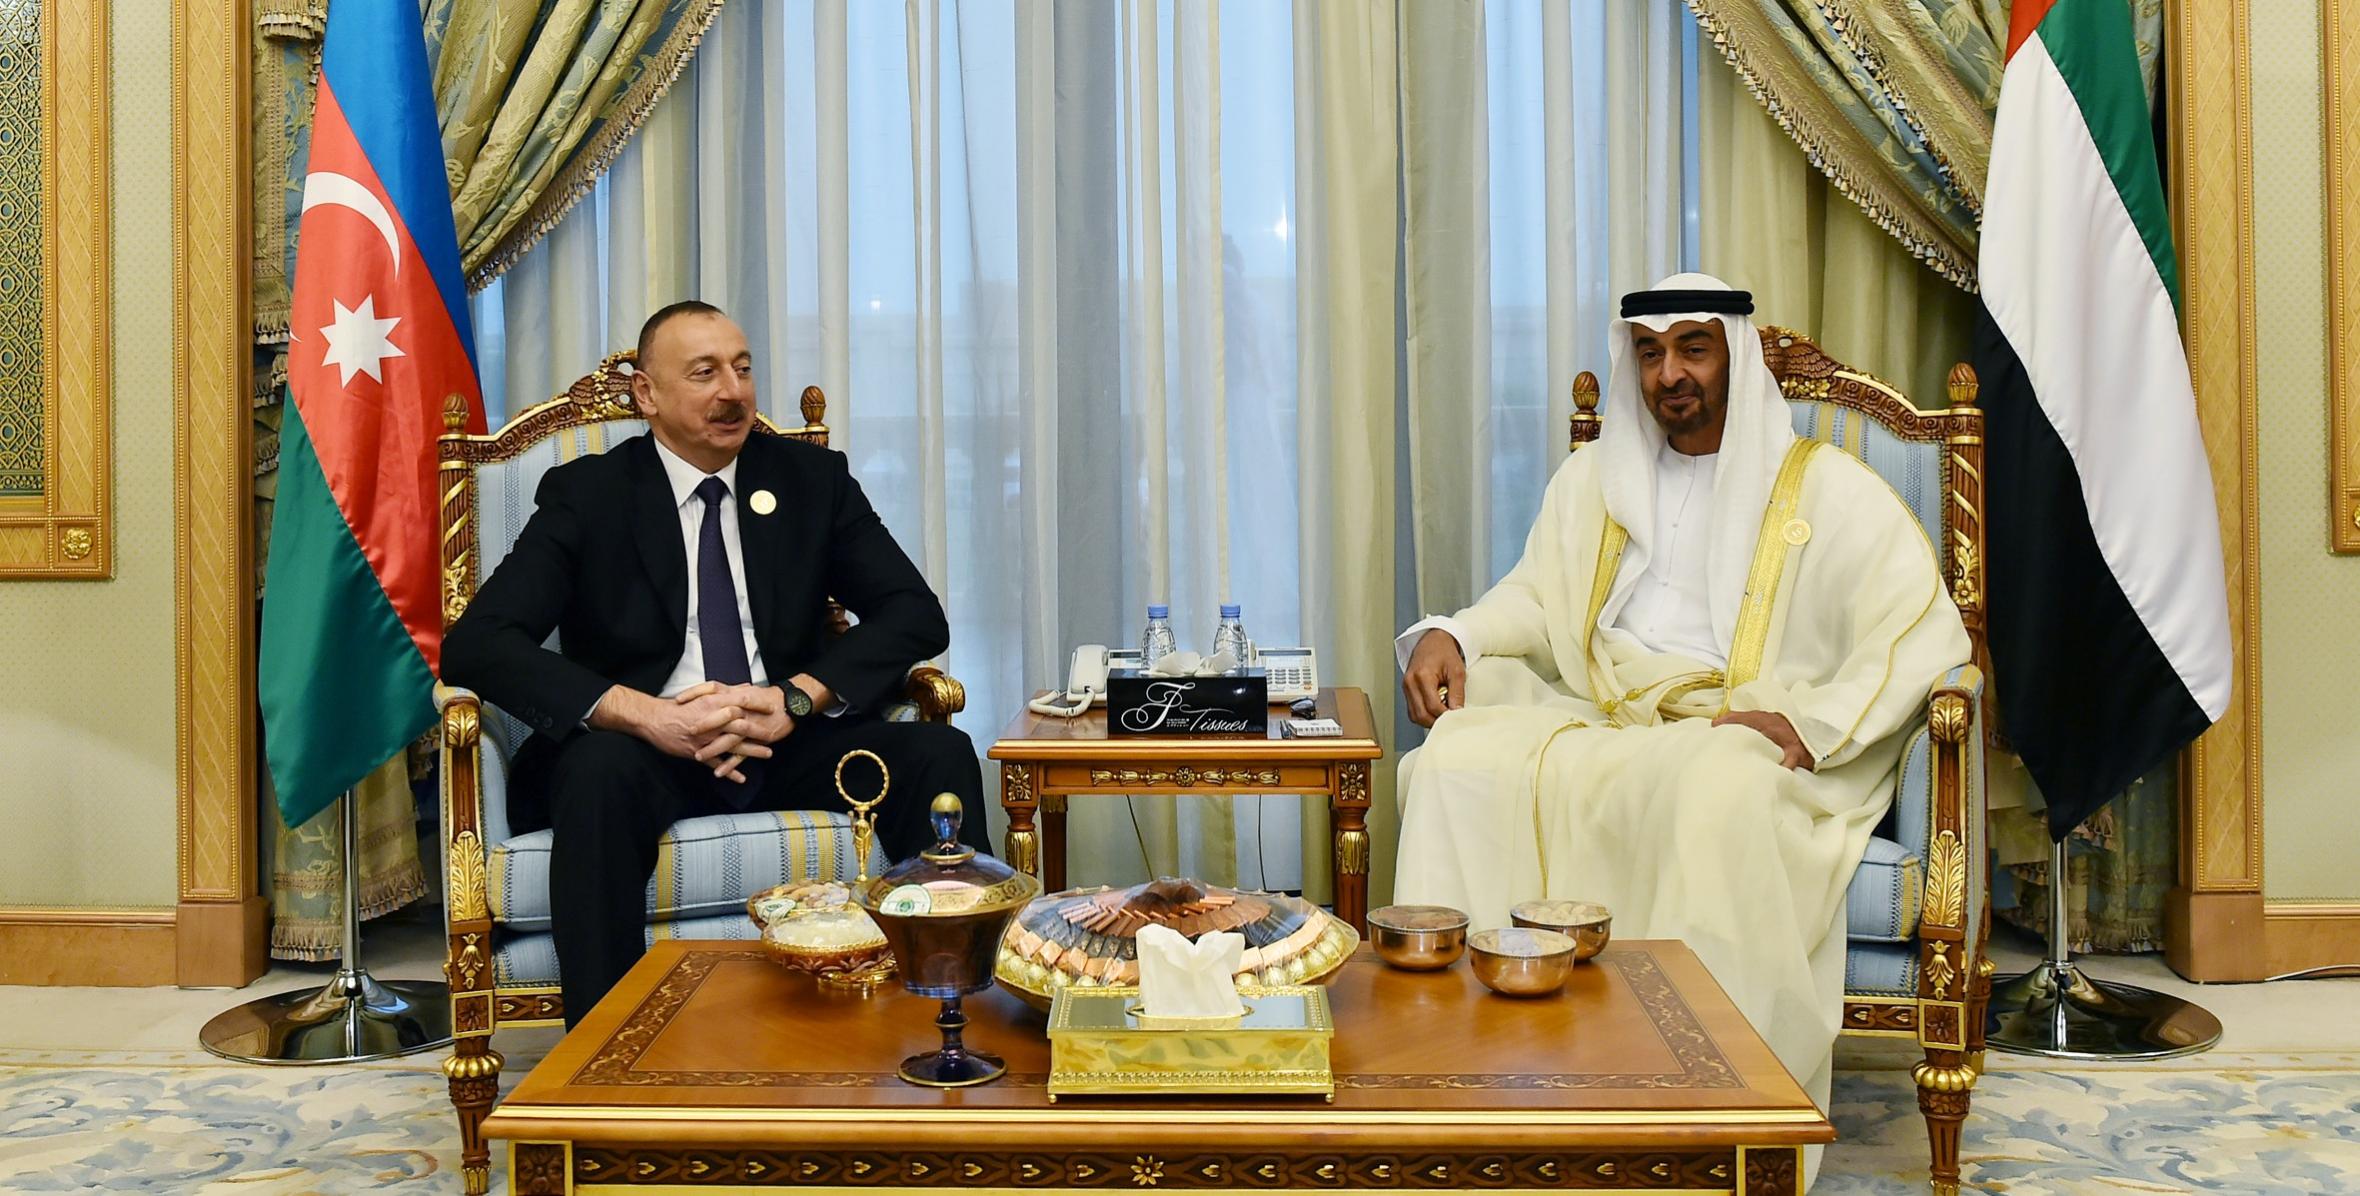 Ilham Aliyev met with Crown Prince of Abu Dhabi, deputy Supreme Commander of UAE Armed Forces in Saudi Arabia